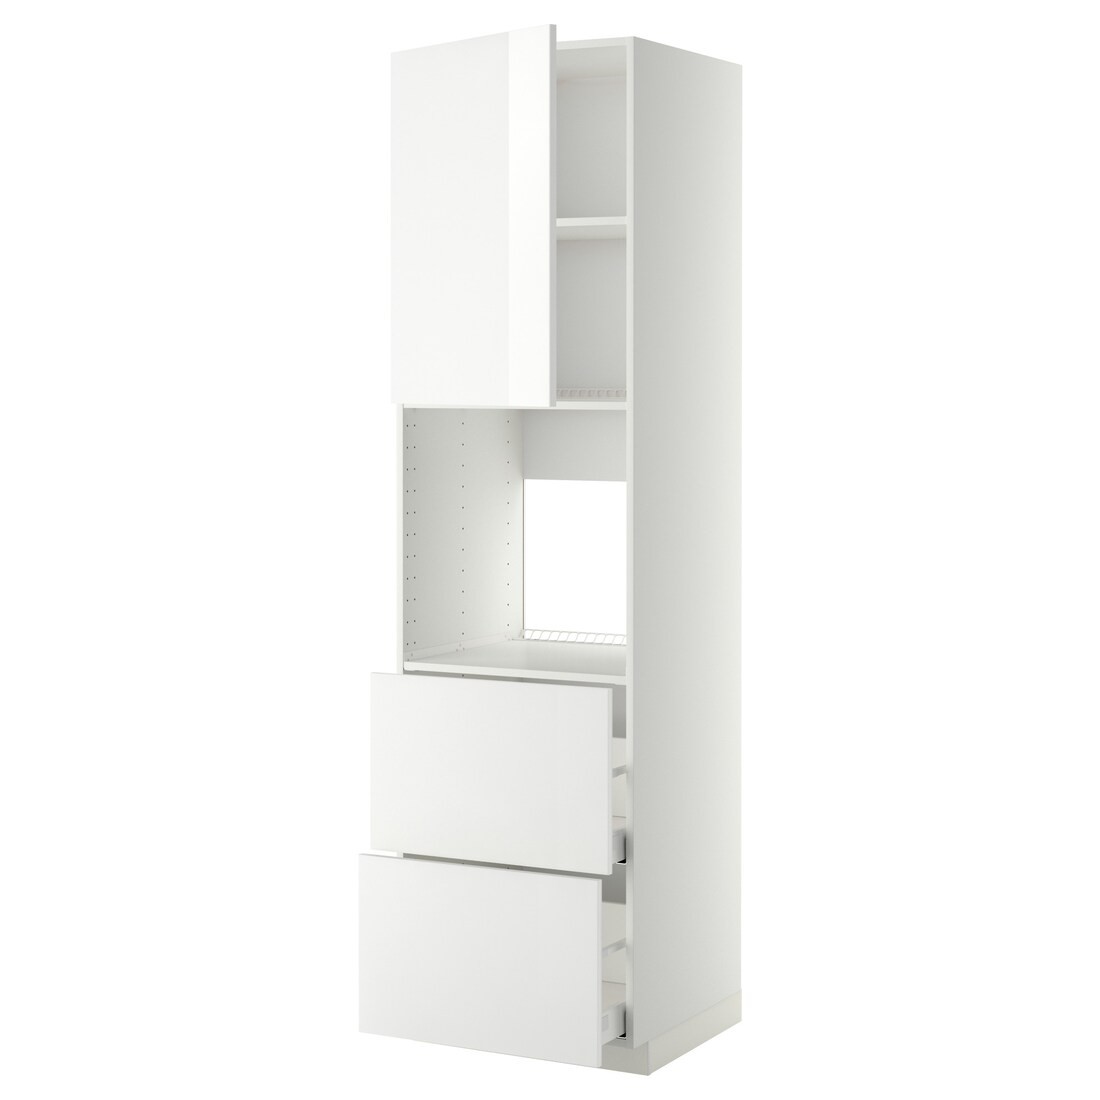 METOD МЕТОД / MAXIMERA МАКСИМЕРА Высокий шкаф для духовки с дверцей / ящиками, белый / Ringhult белый, 60x60x220 см